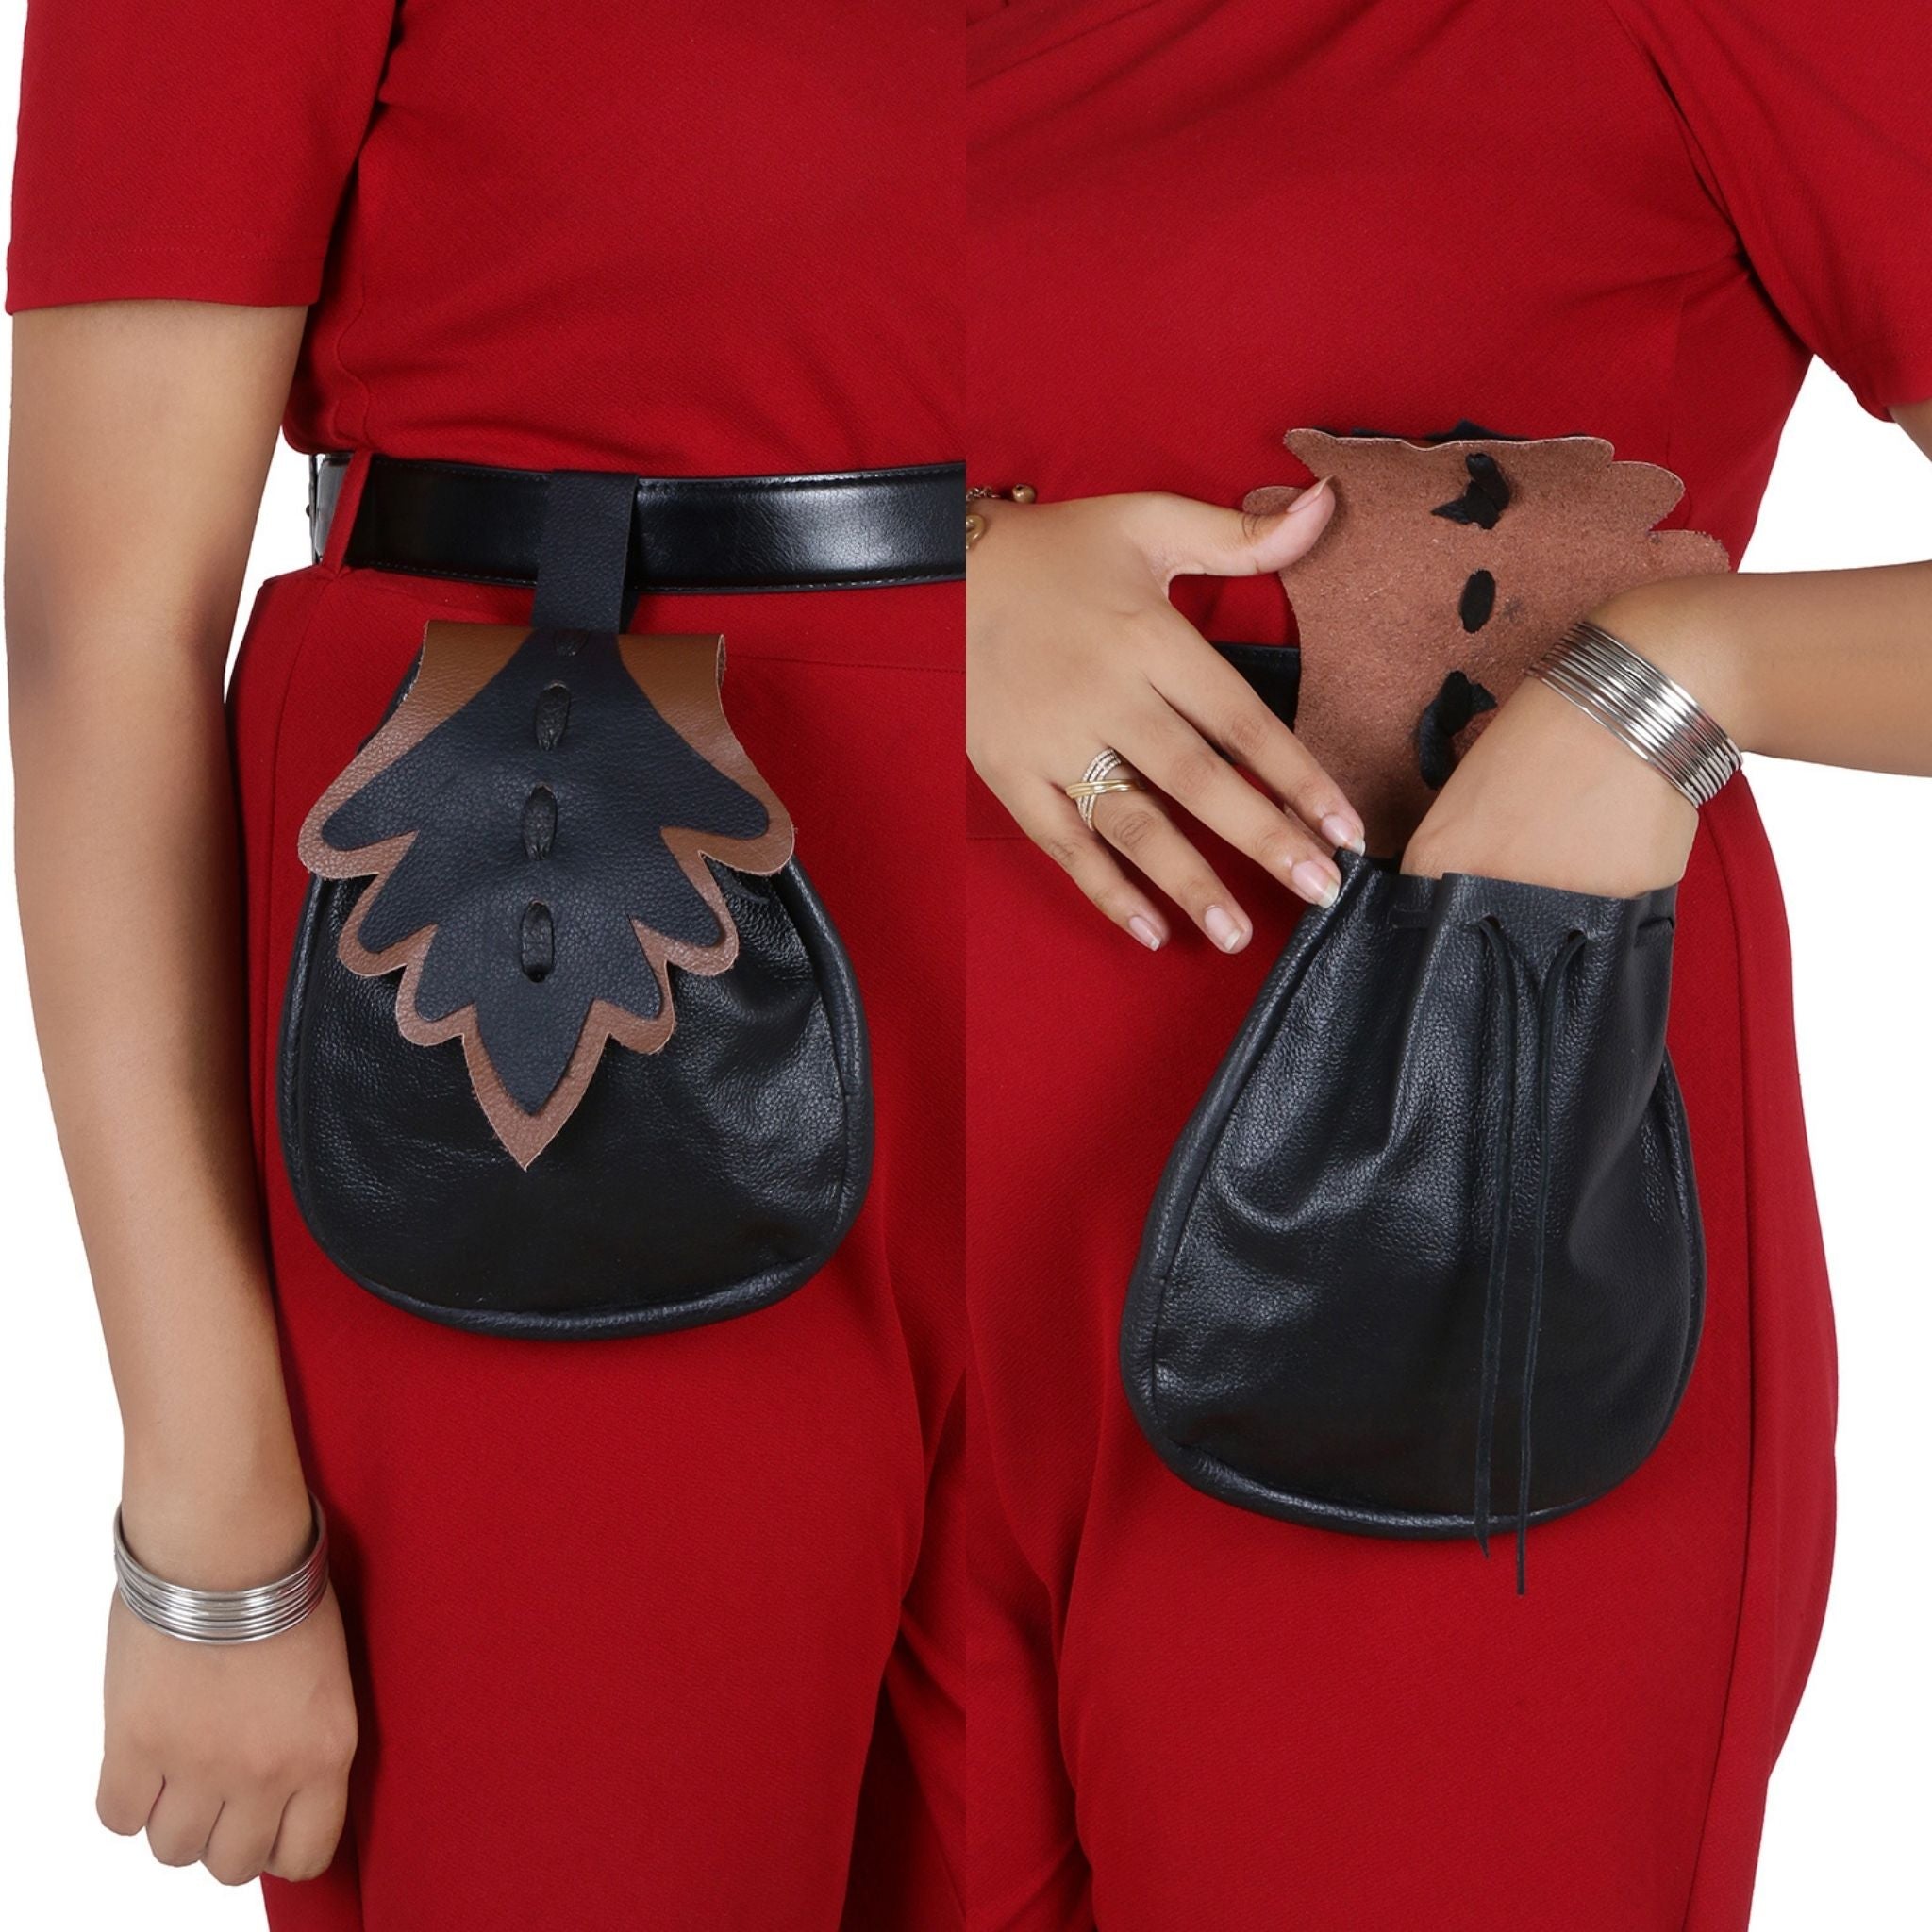 MK MARKETING LV Design Style Premium Waist Pouch/Bag,Shoulder to